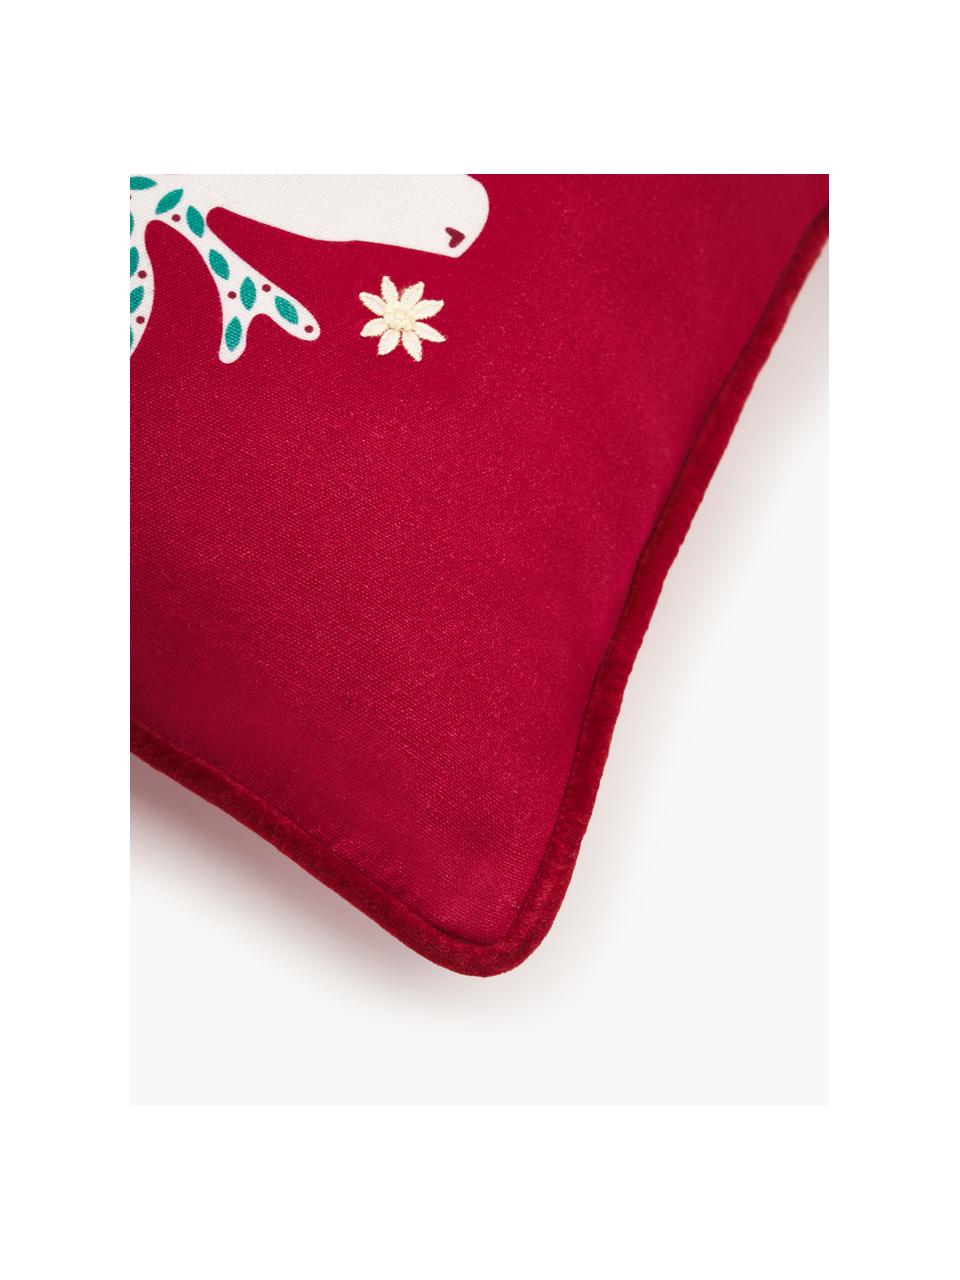 Kissenhülle Prancer mit winterlichem Motiv, Bezug: 100 % Baumwolle, Rot, Weiss, B 45 x L 45 cm